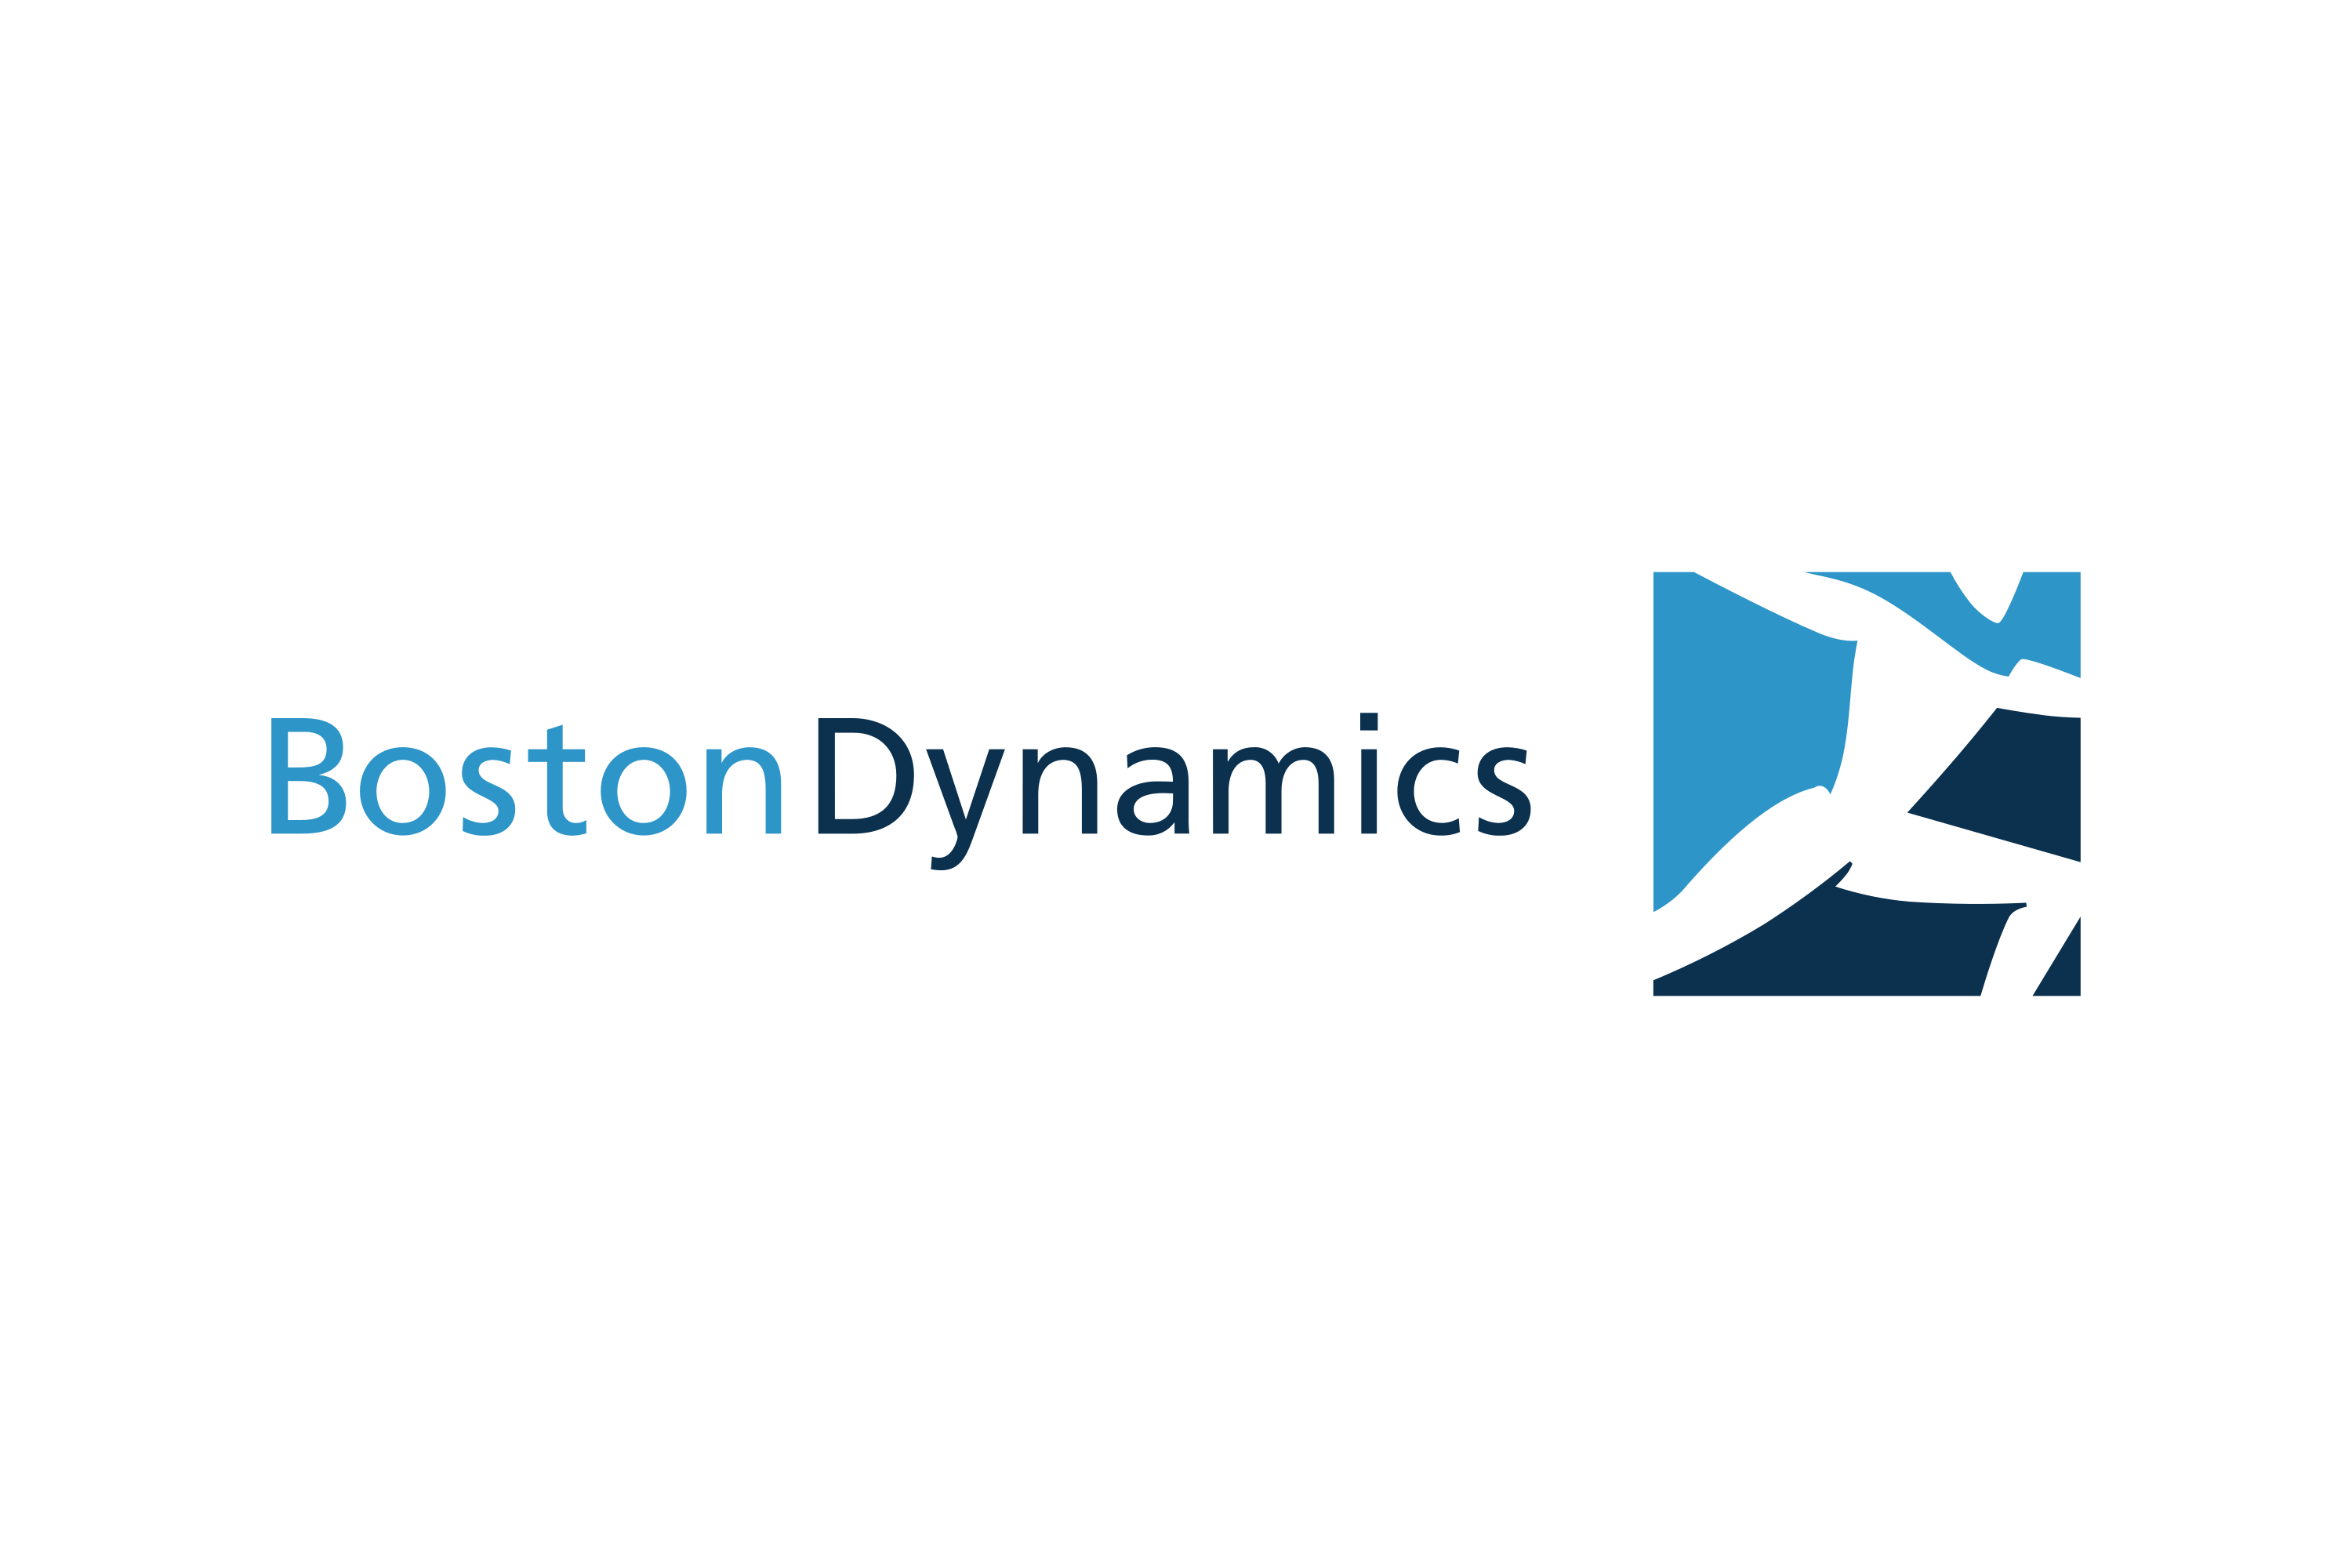 boston dynamics logo